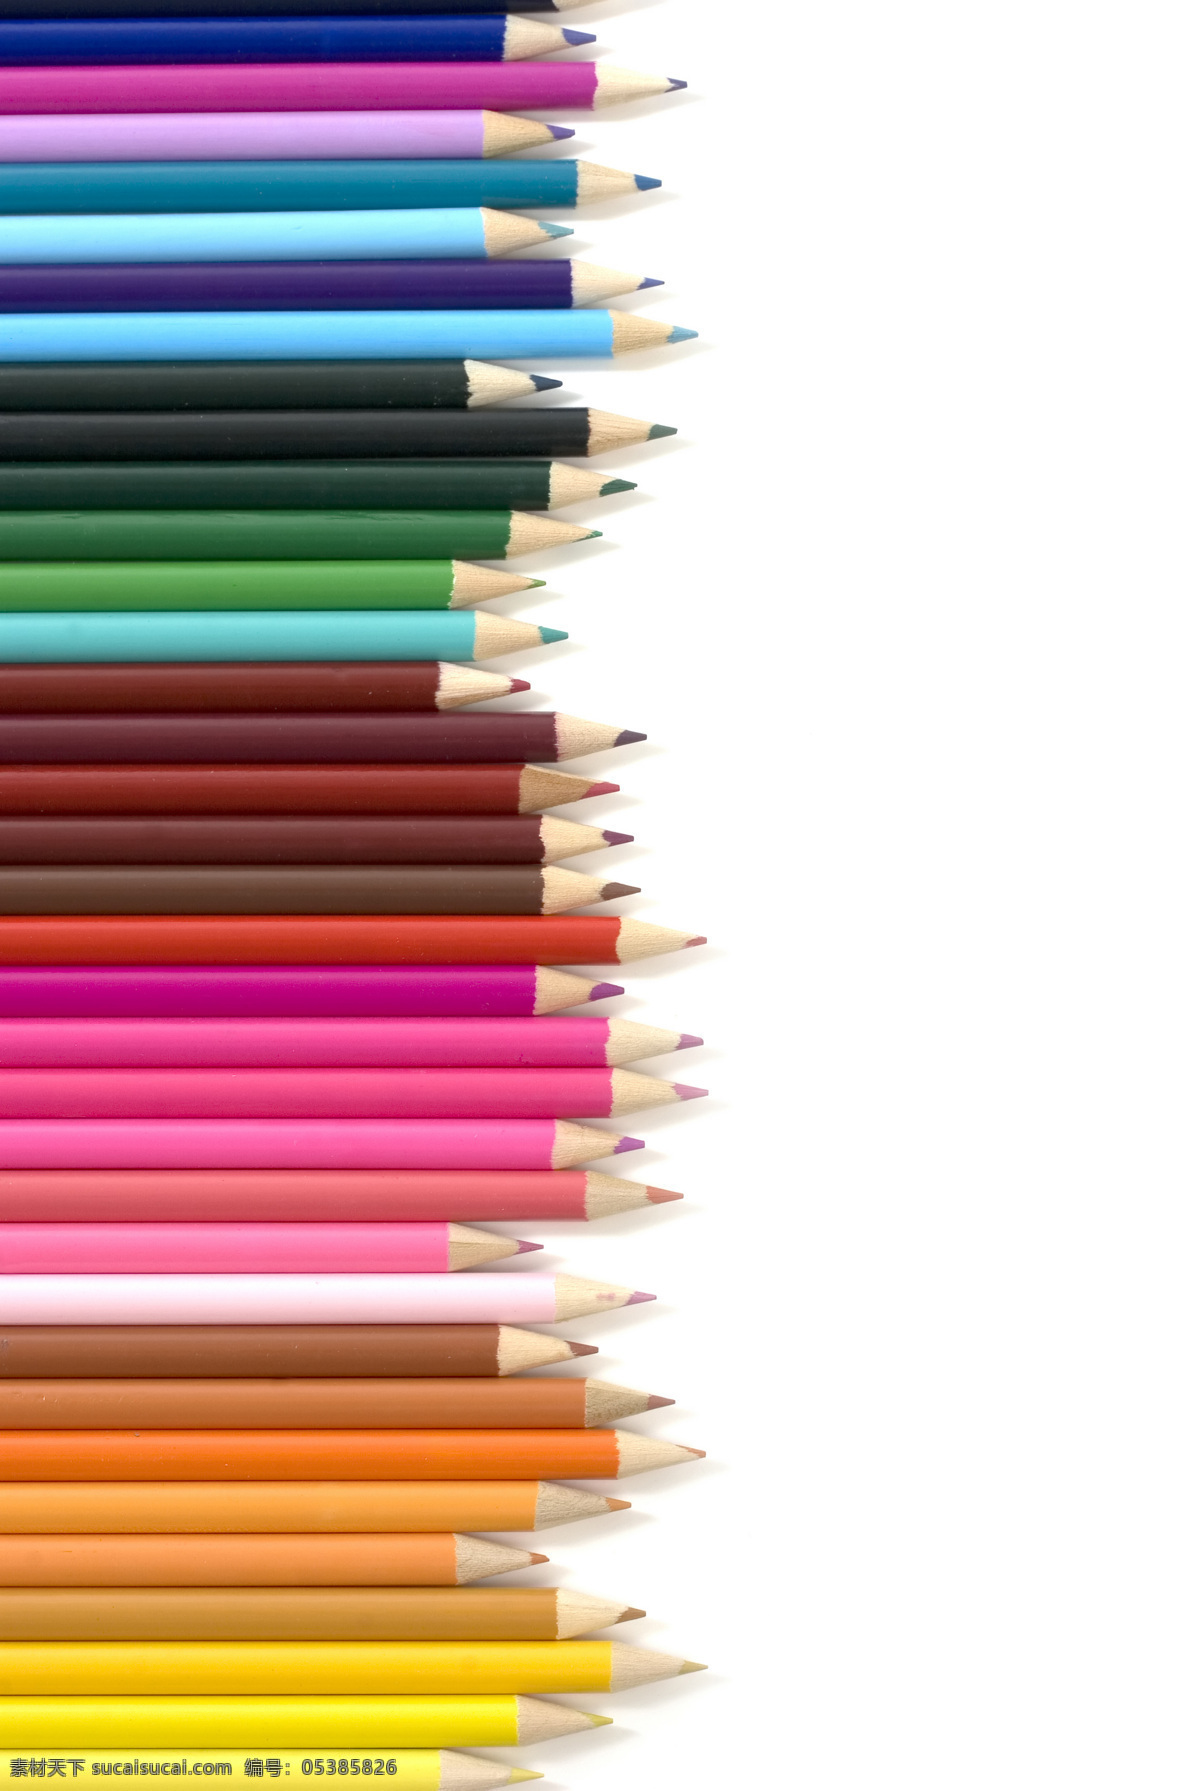 彩色铅笔 铅笔 绘图笔 绘画 笔削 绘画笔 铅笔屑 学习用品 办公文具 生活百科 学习办公